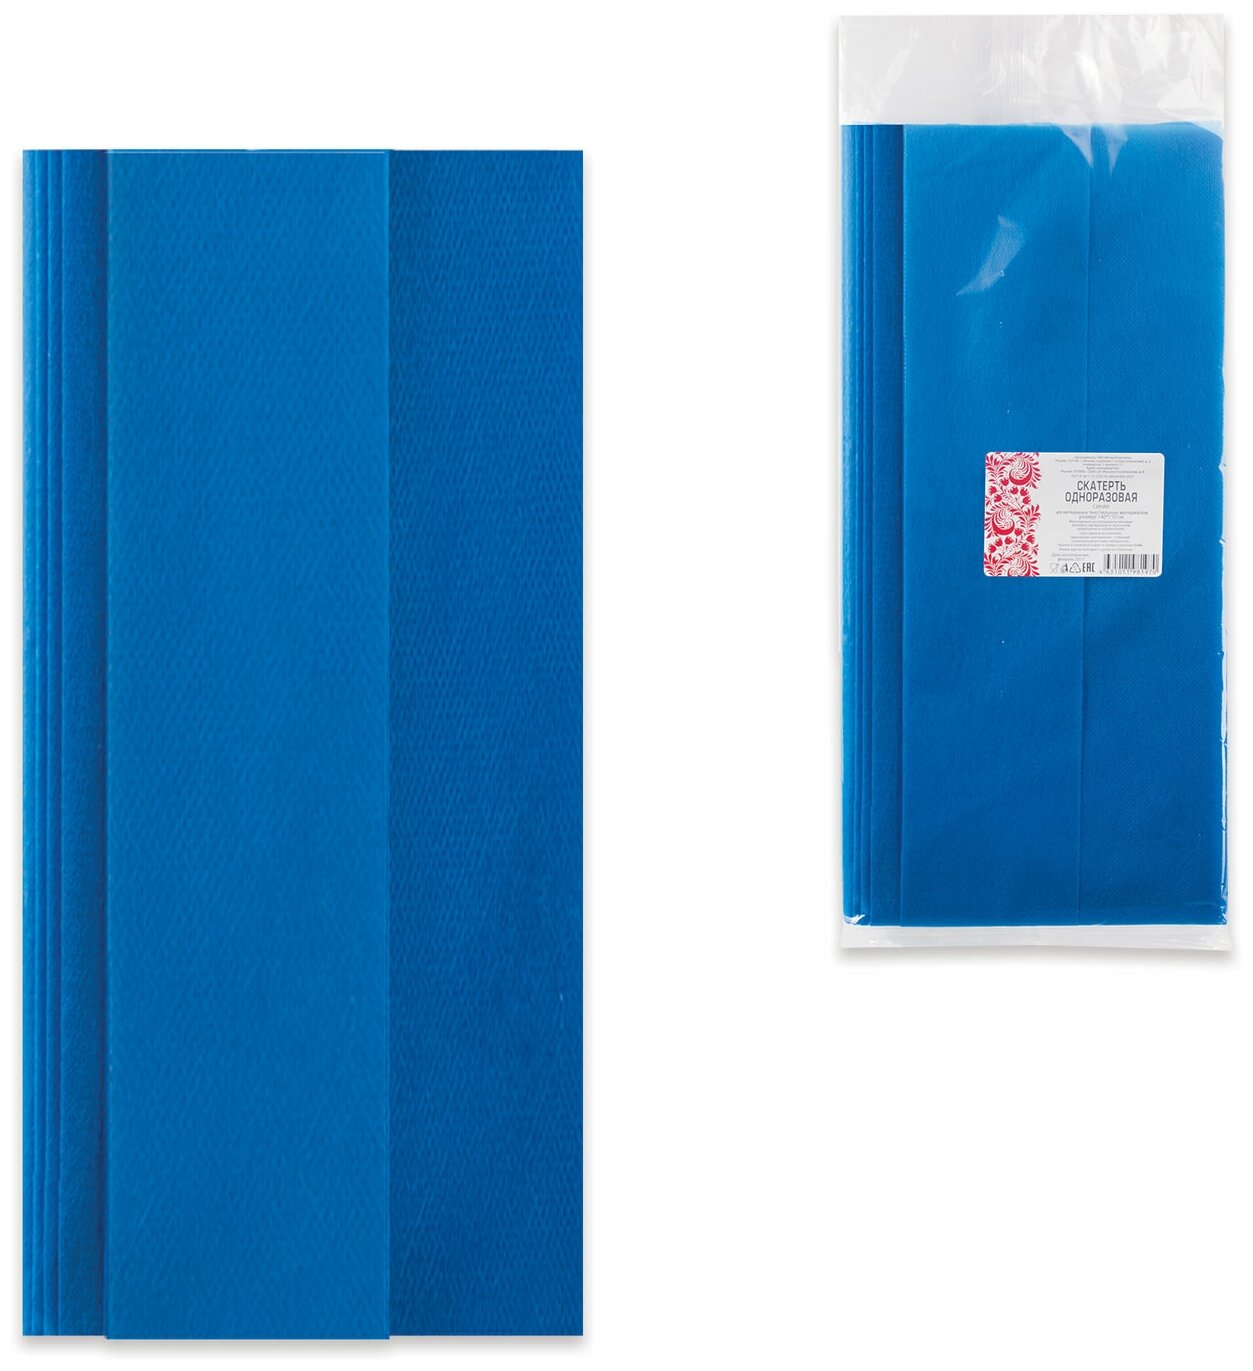 Скатерть одноразовая из нетканого материала спанбонд, 140×110 см, интропластика, синяя /Квант продажи 4 ед./